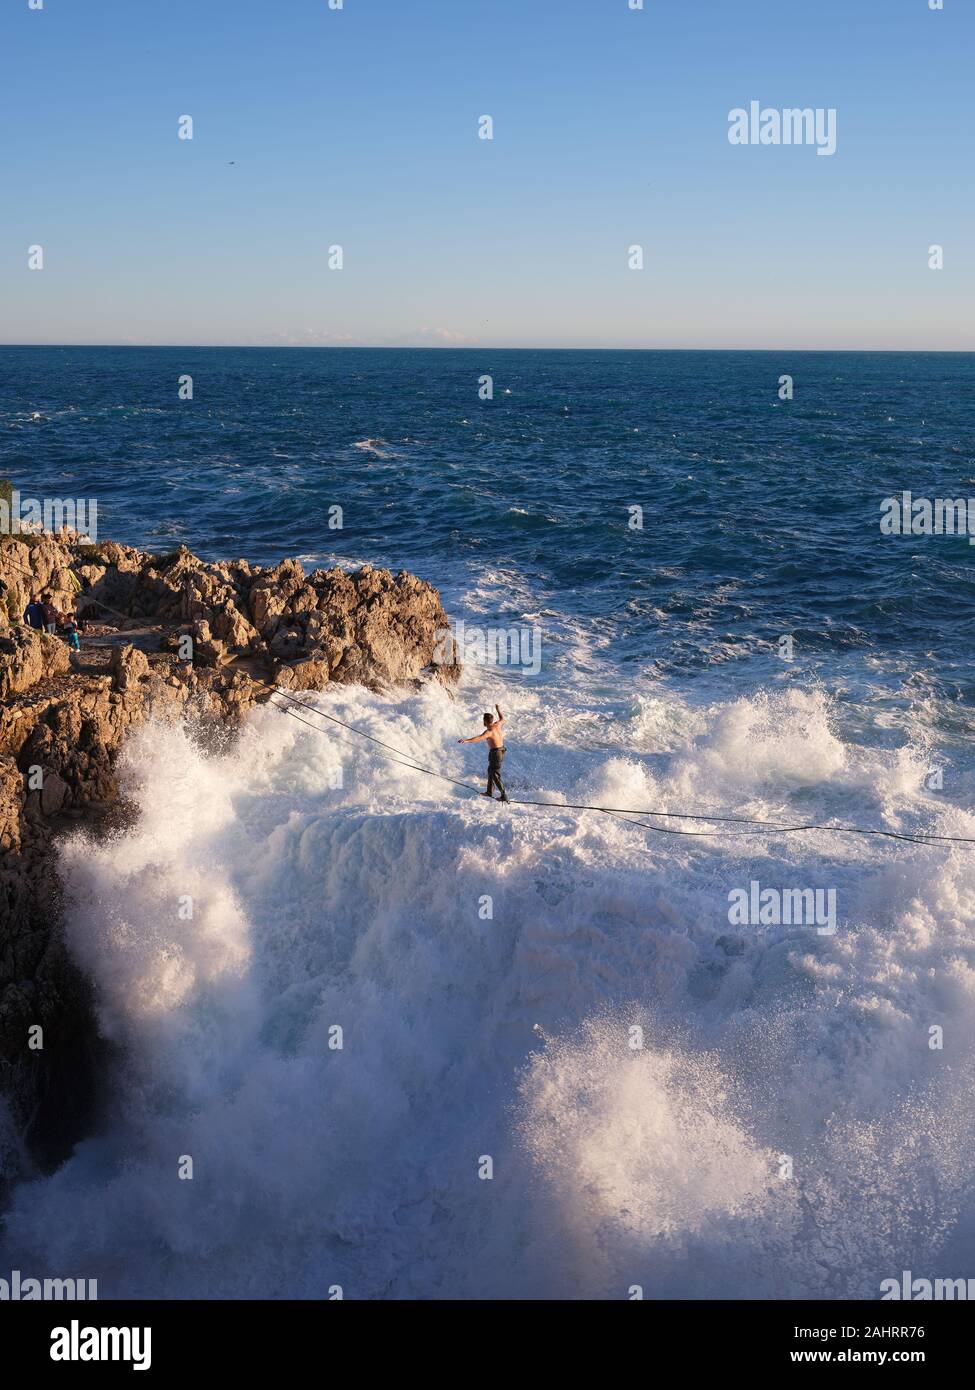 Le jeune homme se détend au-dessus de grandes vagues qui se brisent sur une côte rocheuse. Cap de Nice, Côte d'Azur, Alpes-Maritimes, France. Banque D'Images